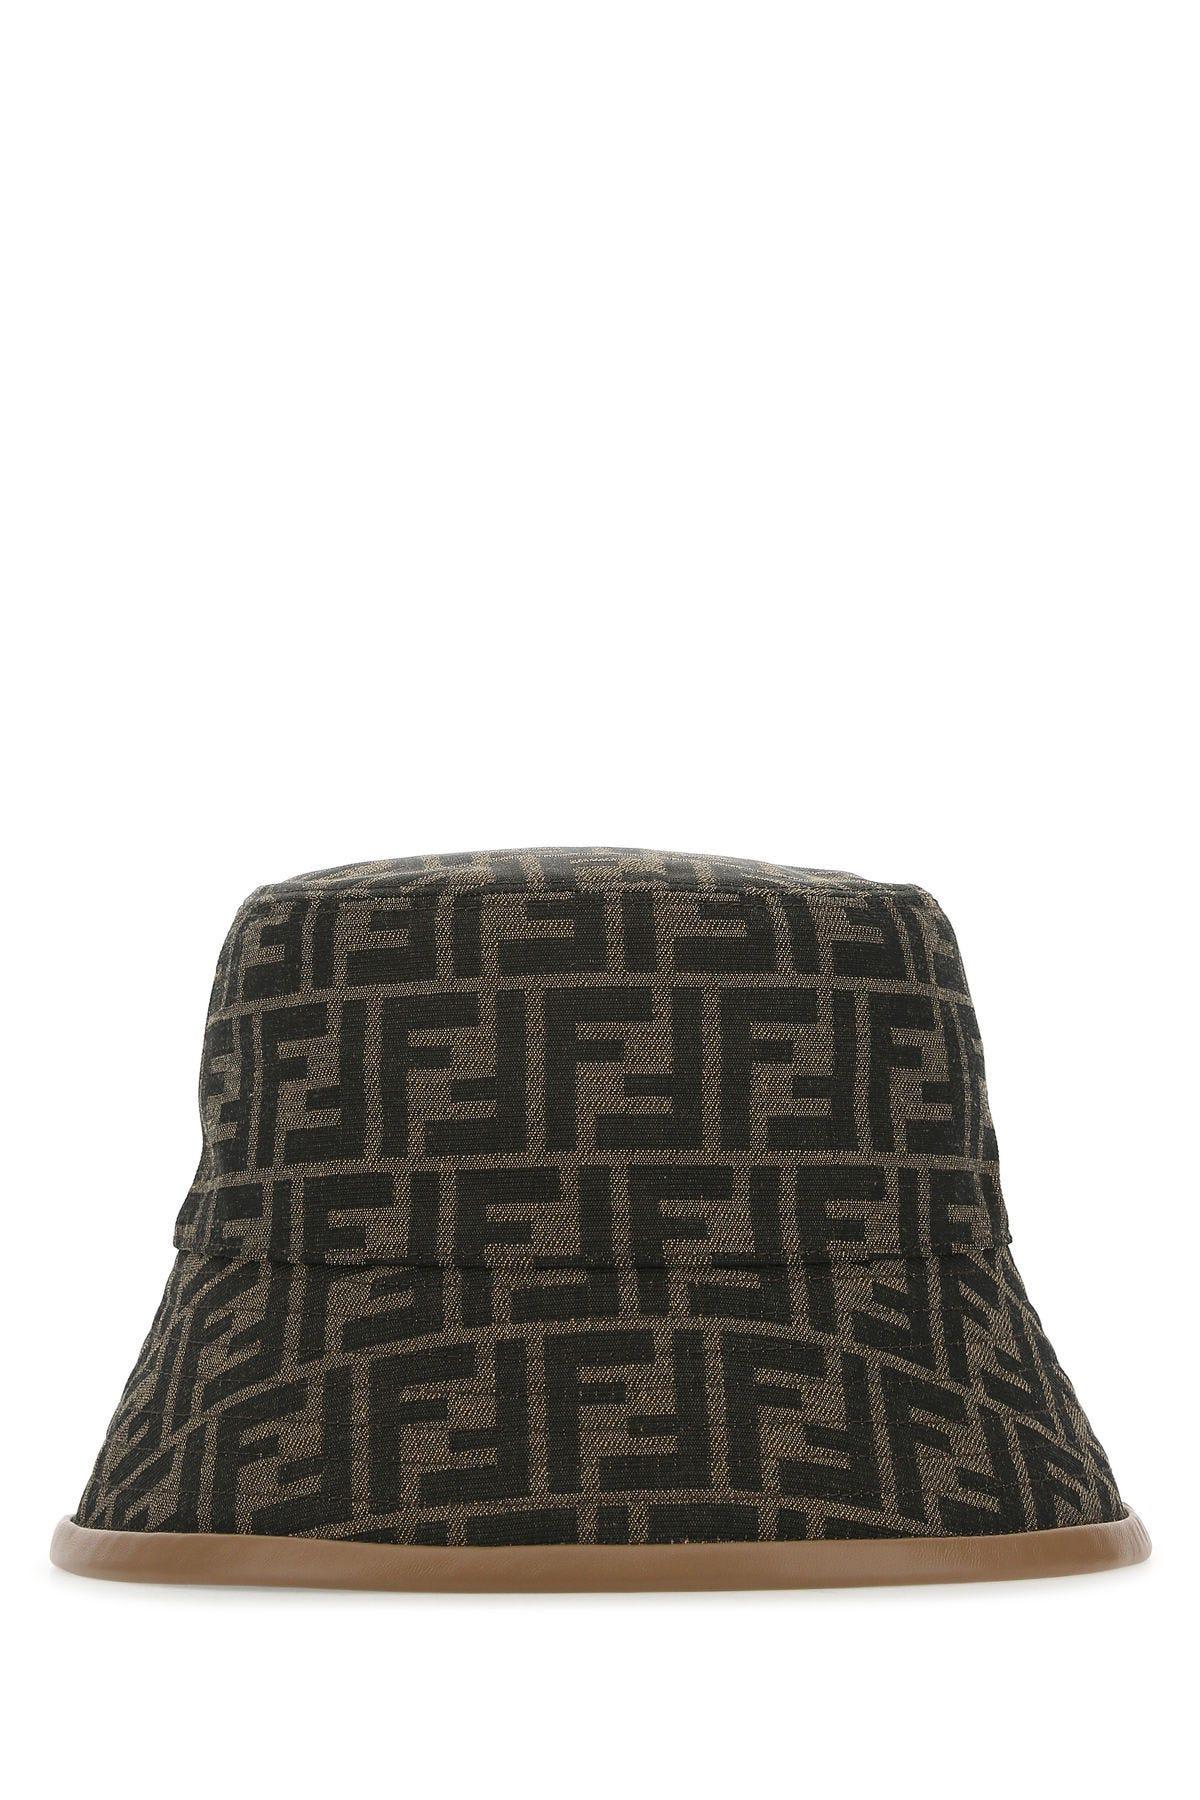 Fendi Bucket Hat ff In Fabric